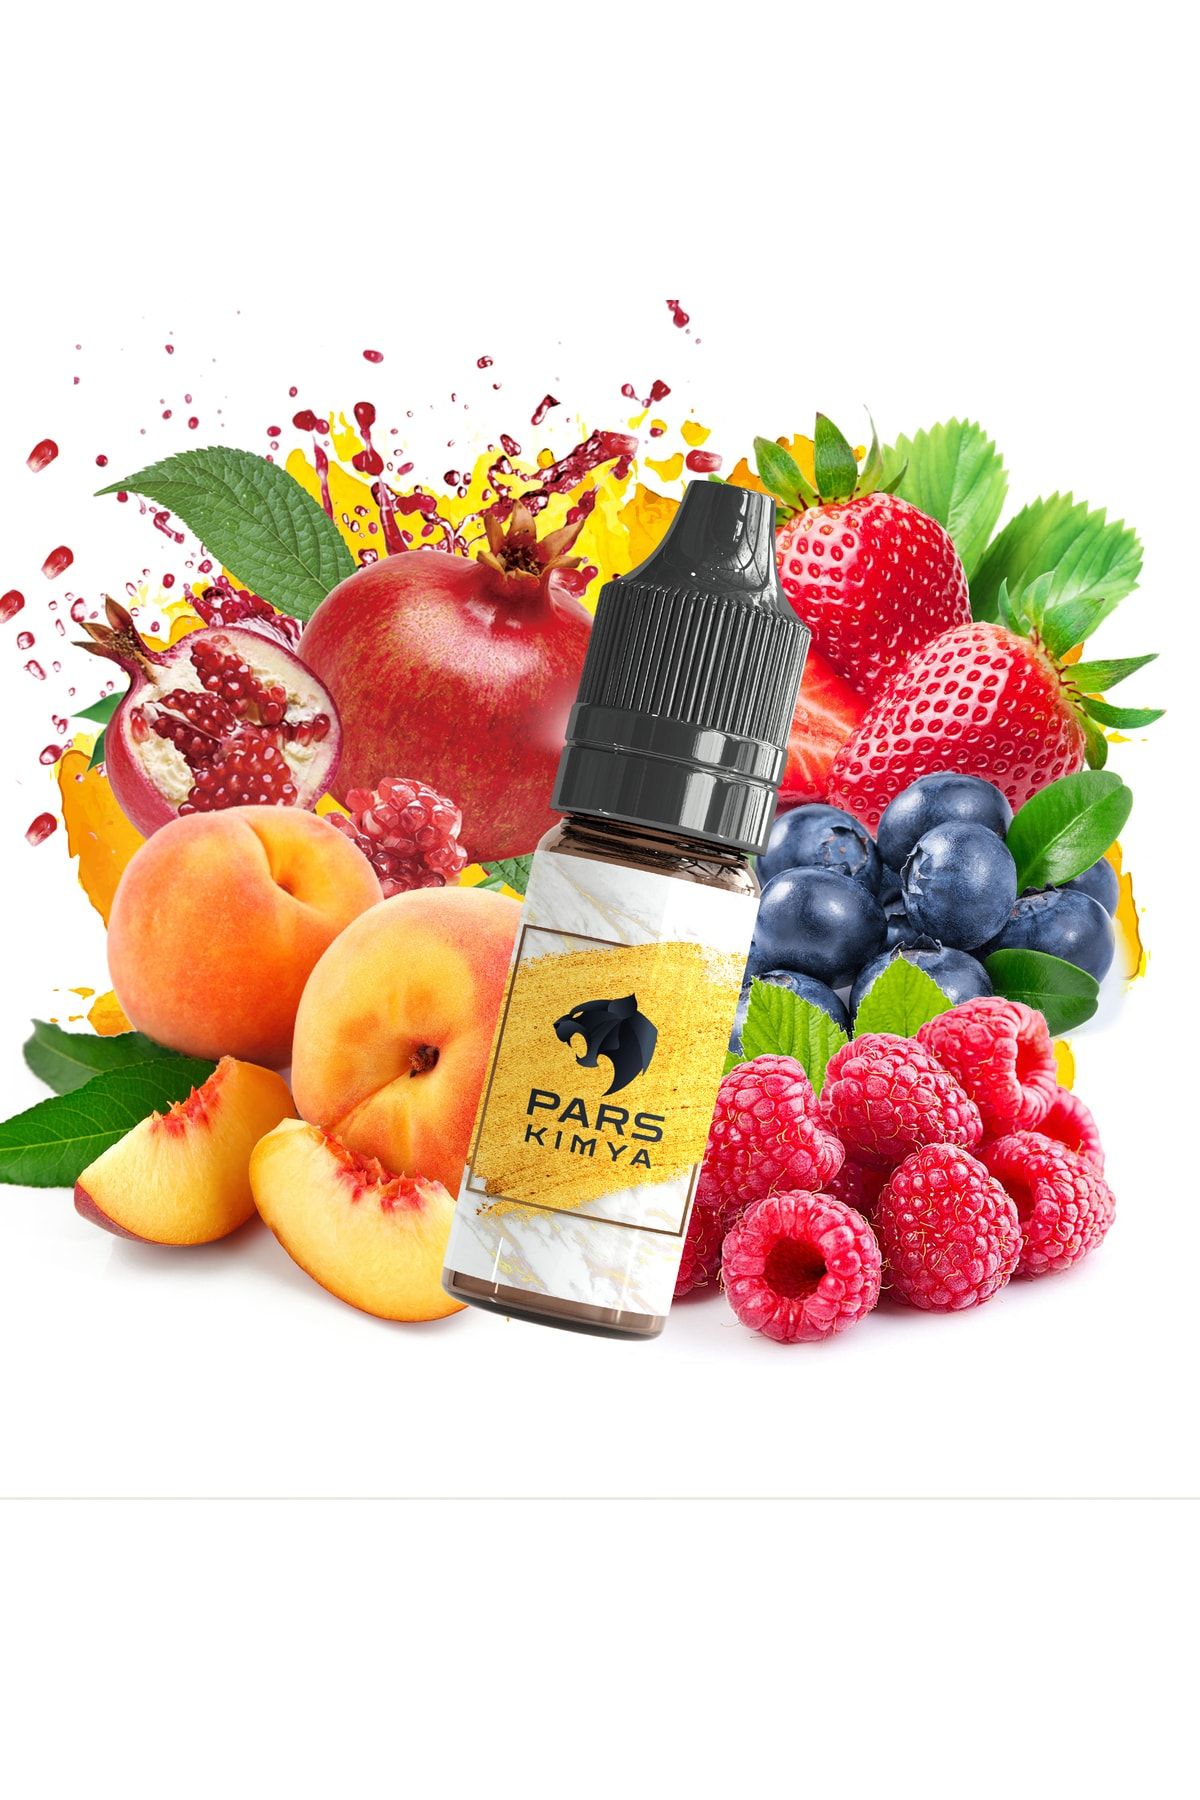 Pars Kimya Fruit Loops 10 Ml Premium Gıda Aroması